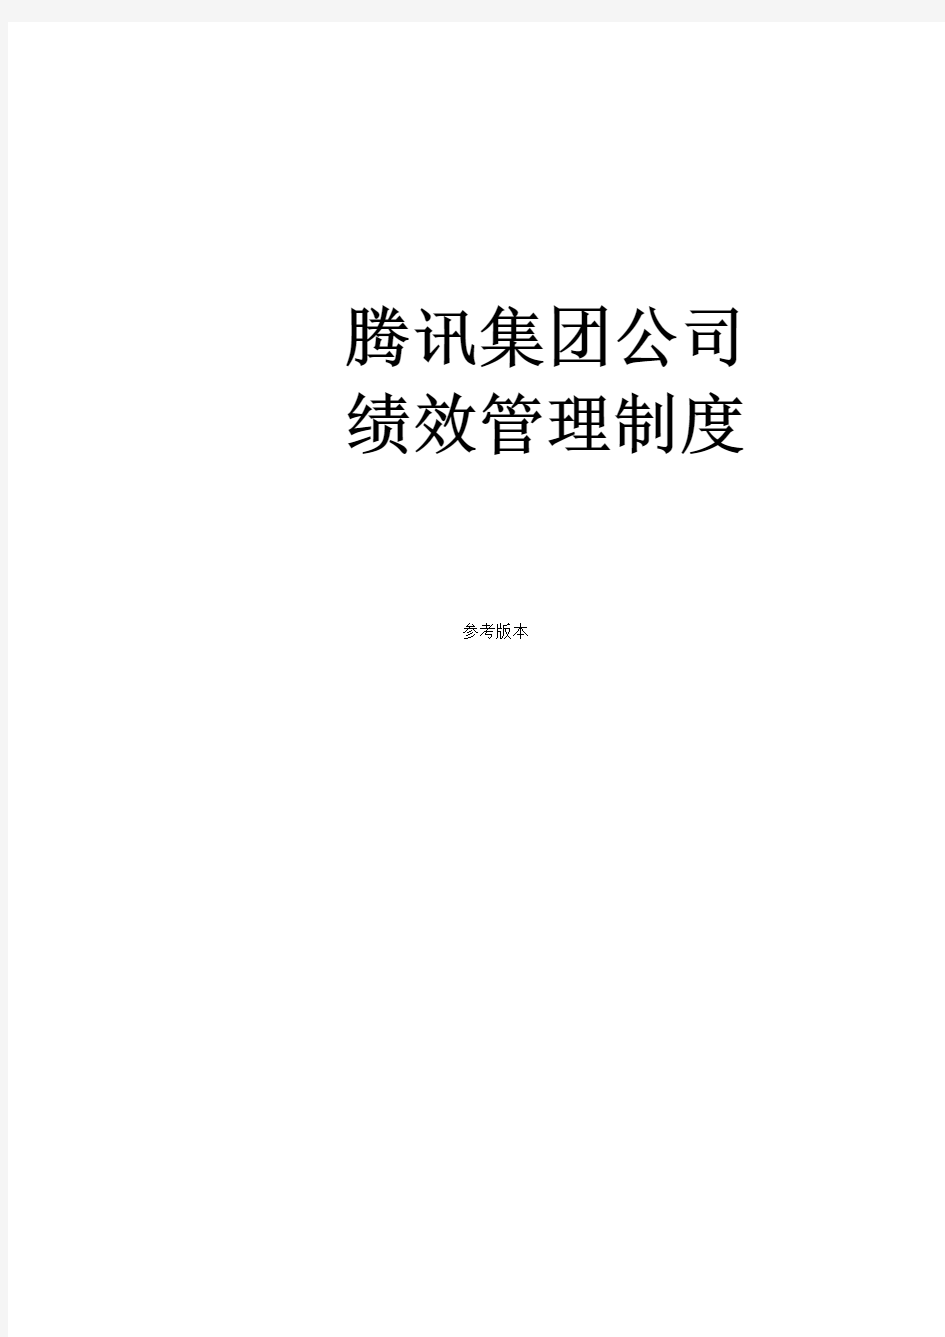 [精品]【案例】中国腾讯公司绩效管理制度